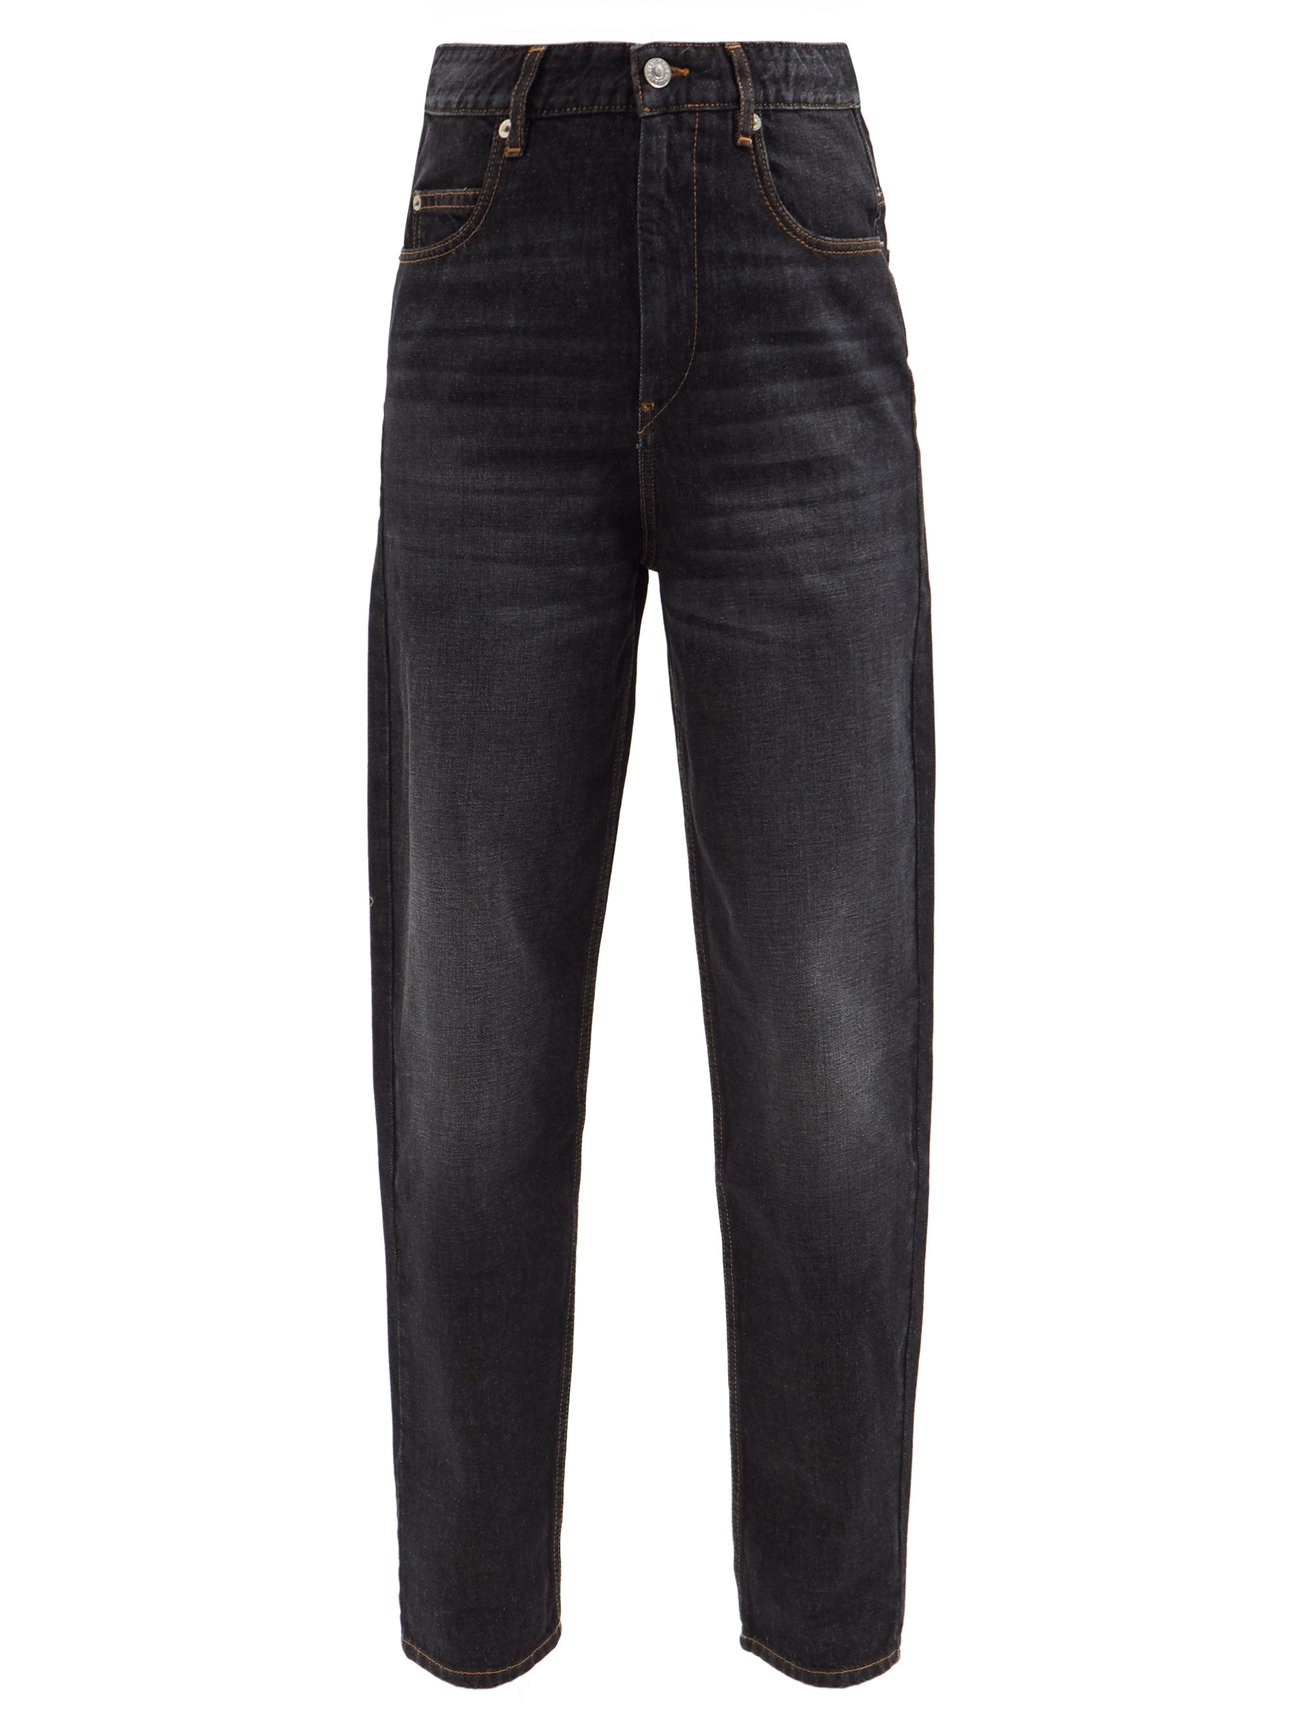 Black Corsysr high-rise tapered-leg jeans | Isabel Marant Étoile ...